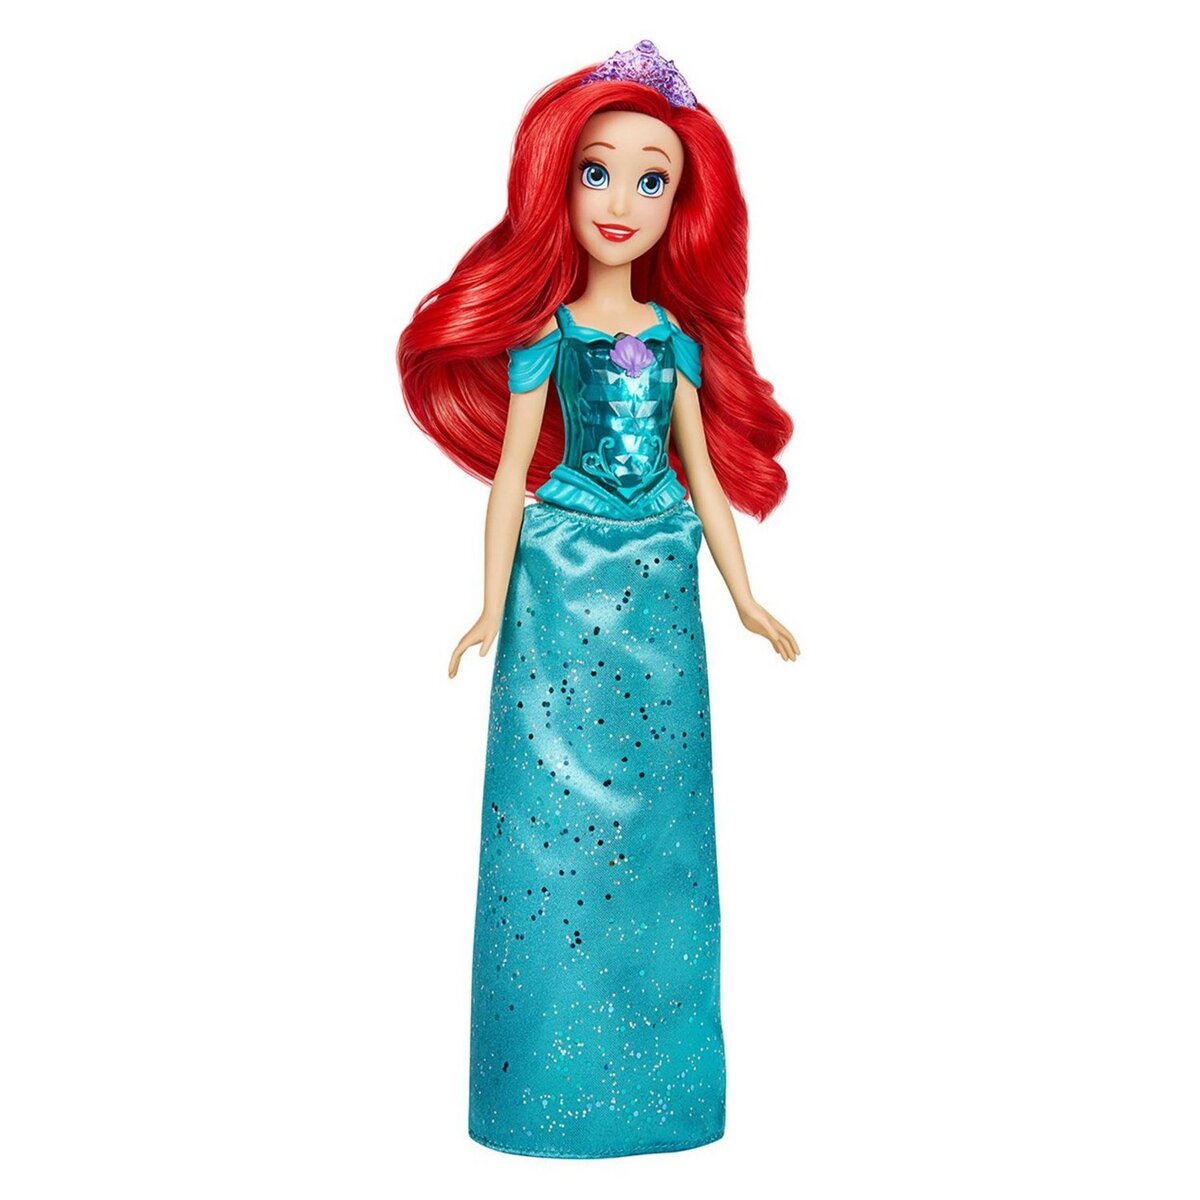 HASBRO Poupée Ariel poussière d'étoiles Disney Princesses pas cher 